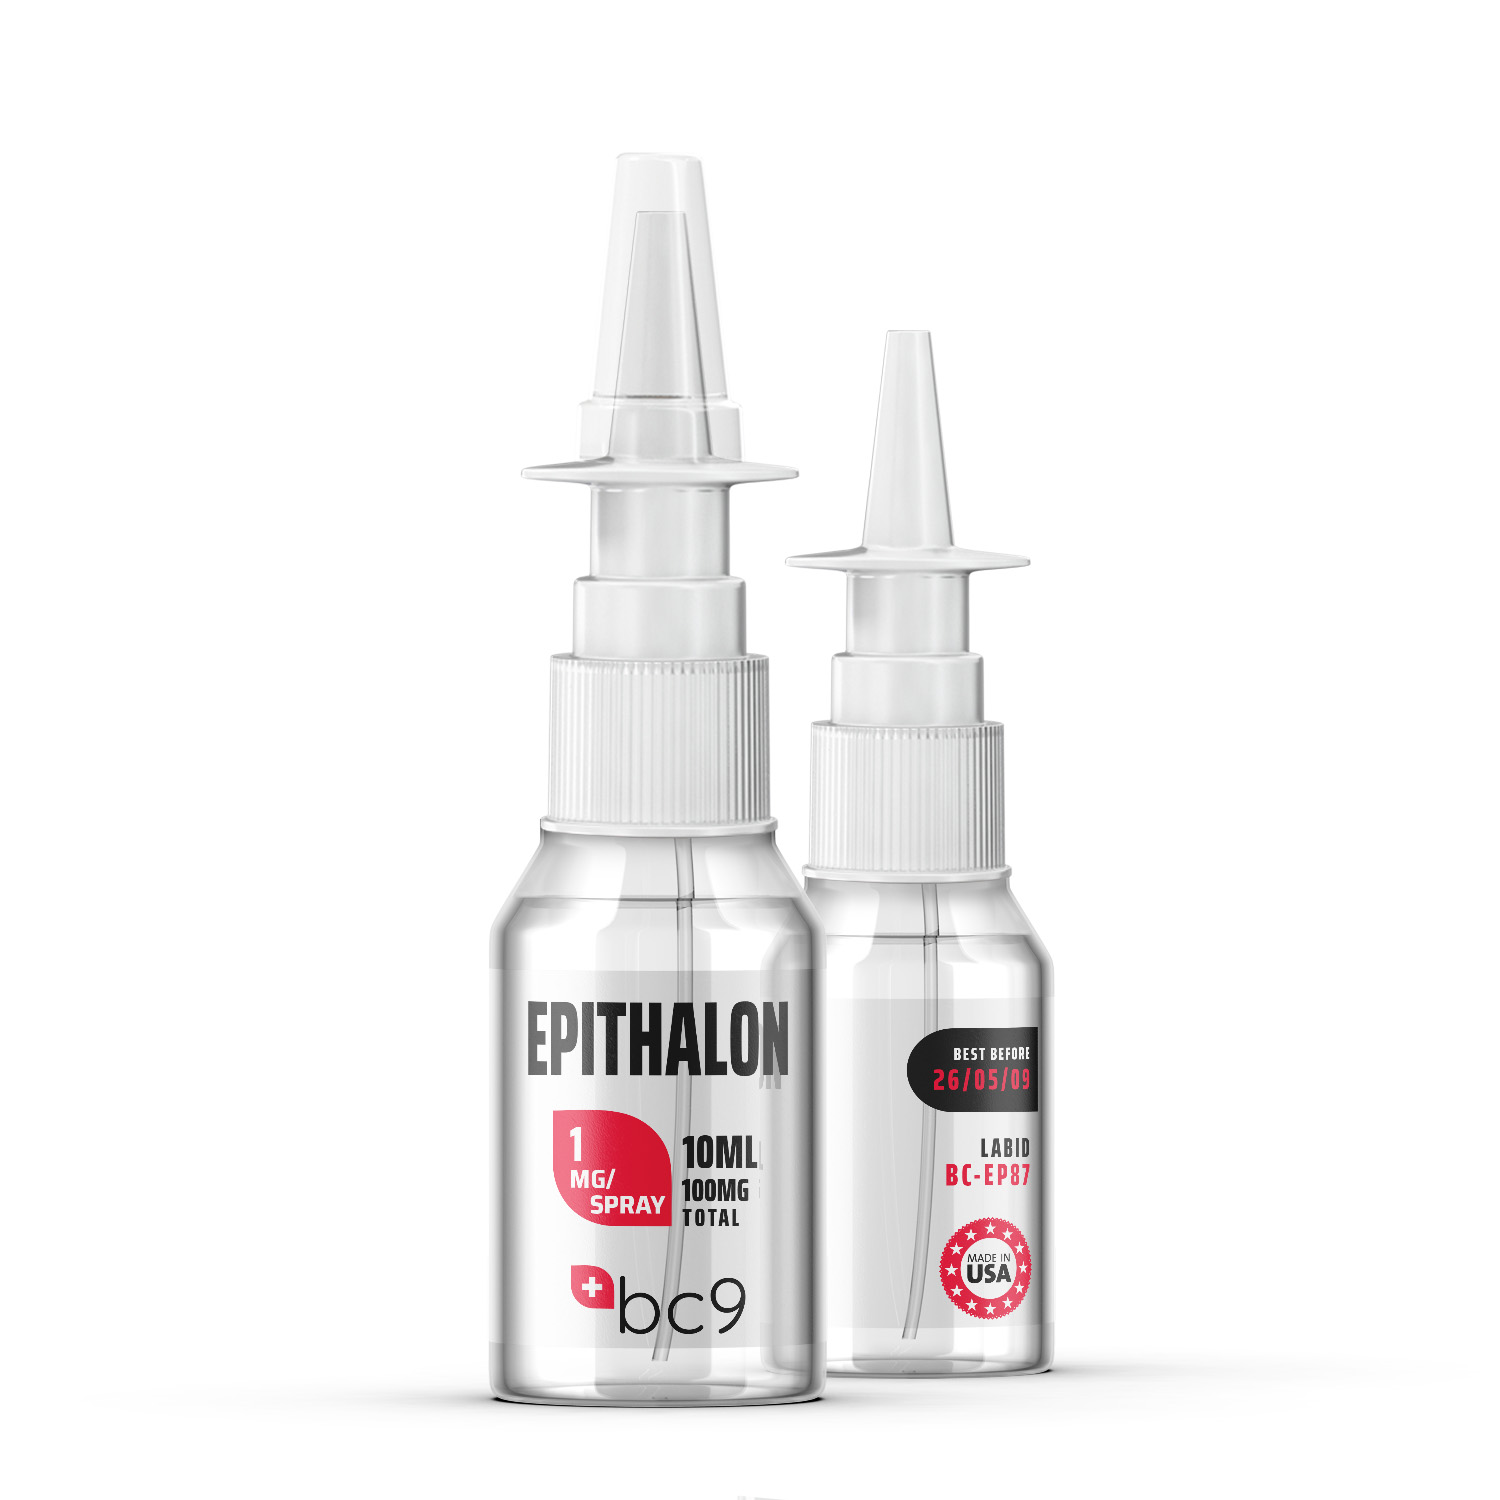 Epithalon Nasal Spray 2 | BC9